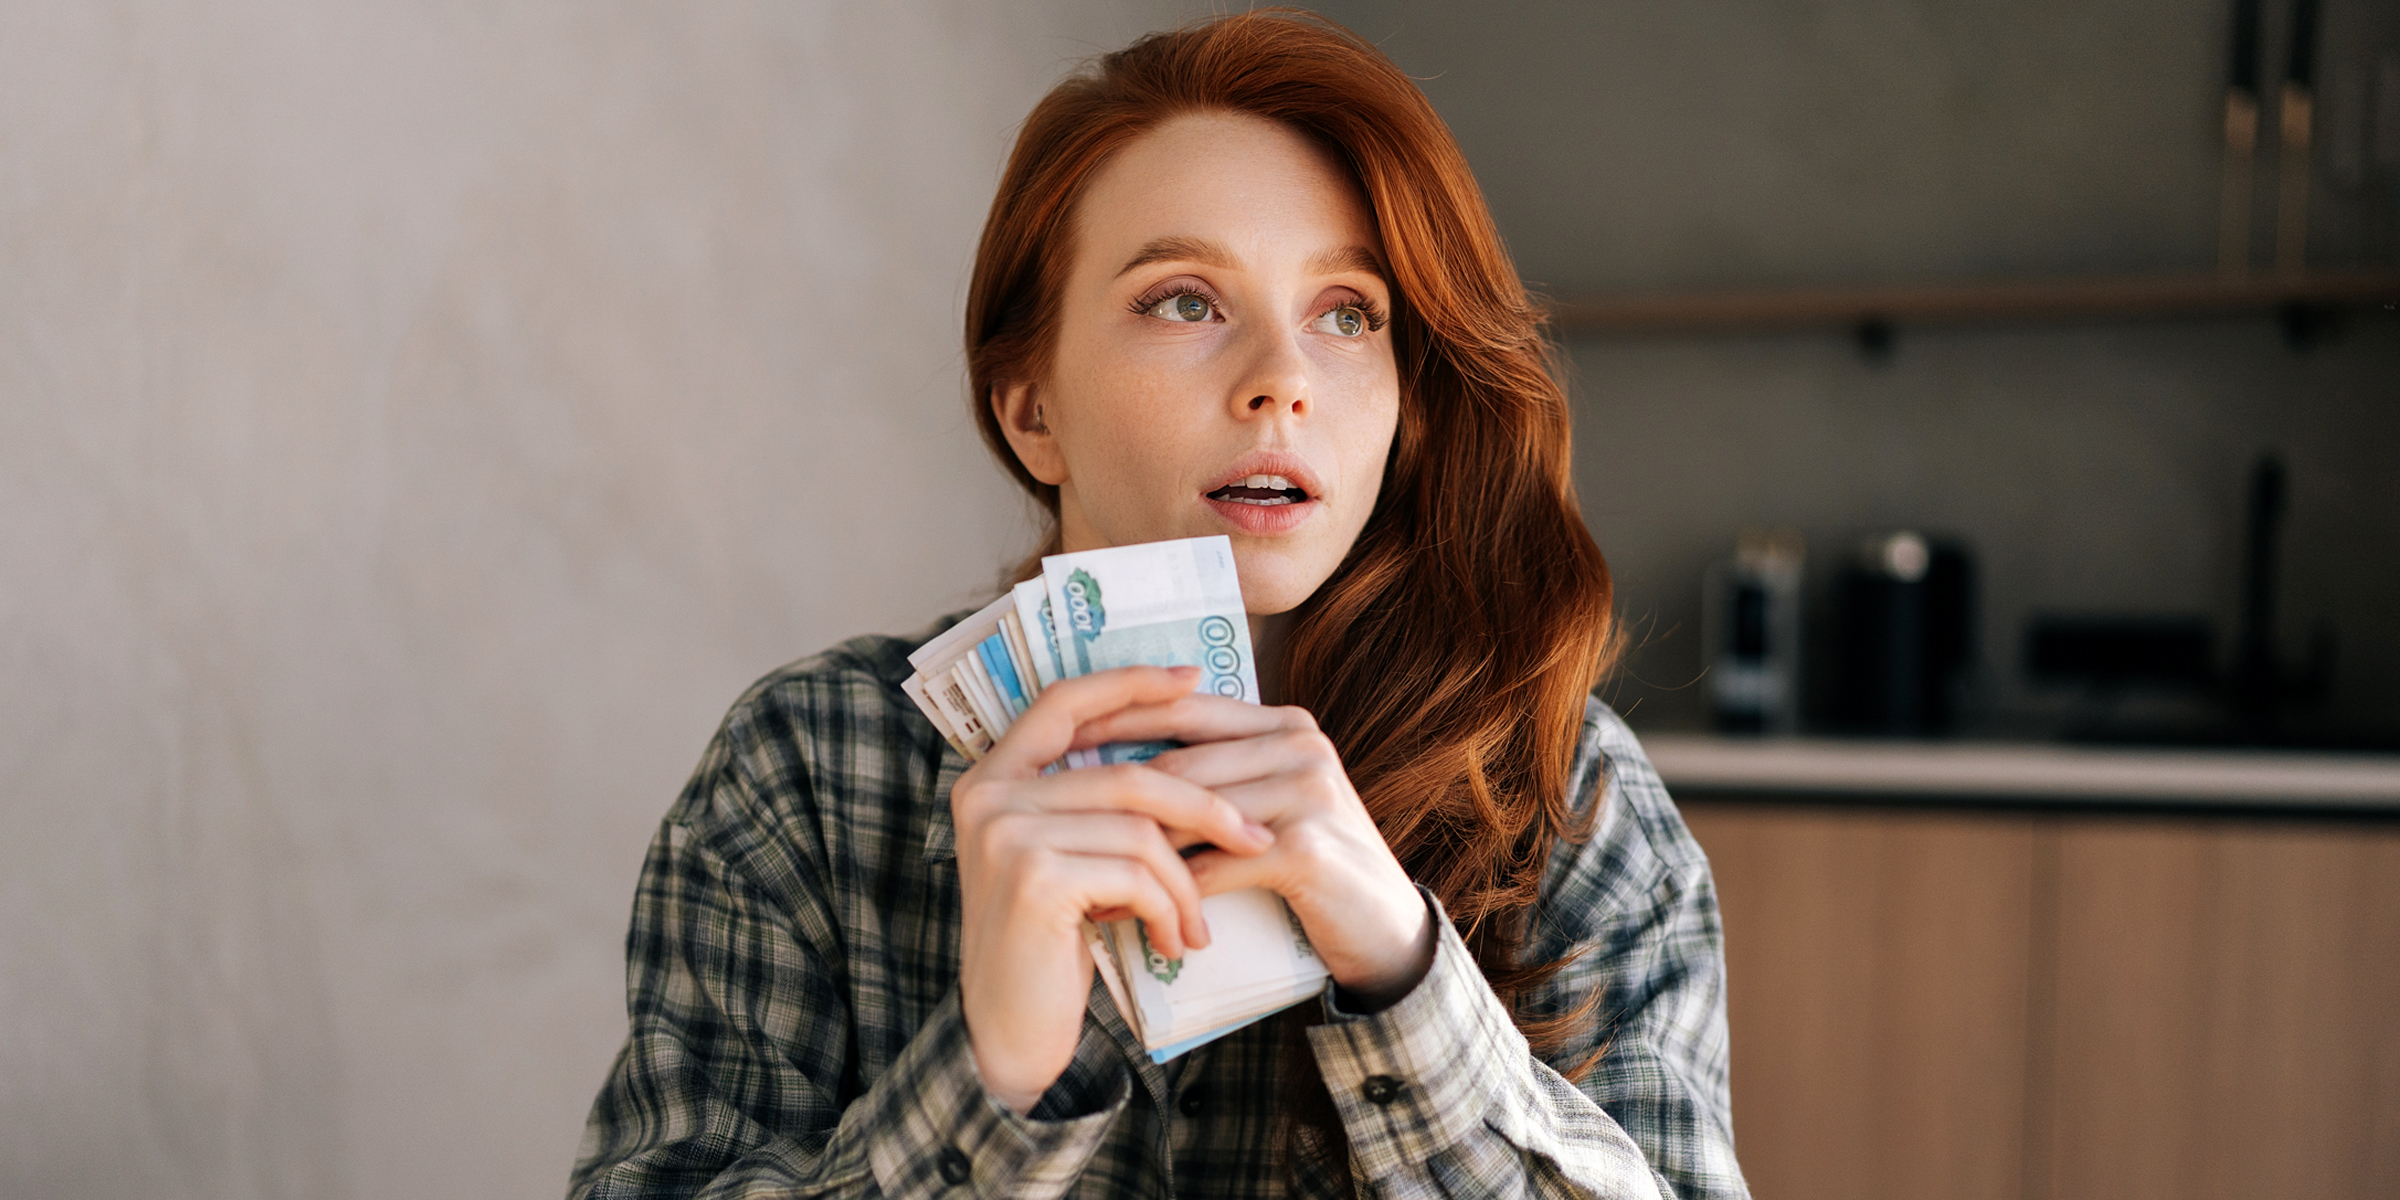 A woman holding money bills | Source: Shutterstock